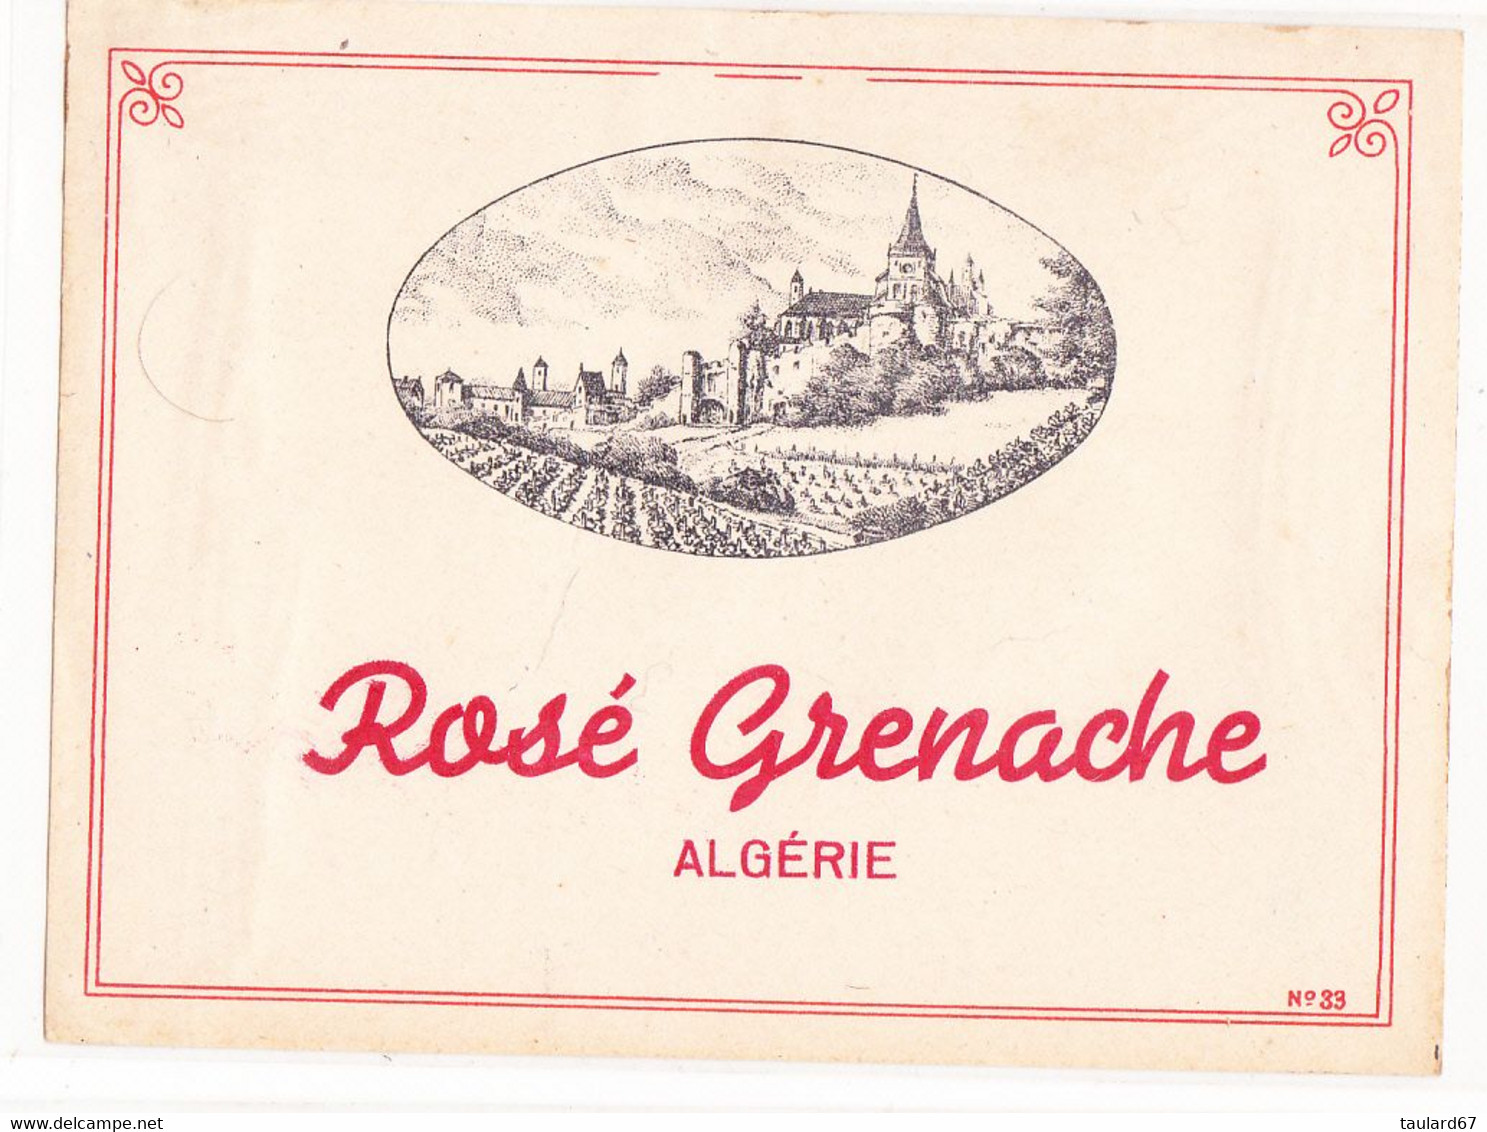 Rosé Grenache Algérie - Pink Wines